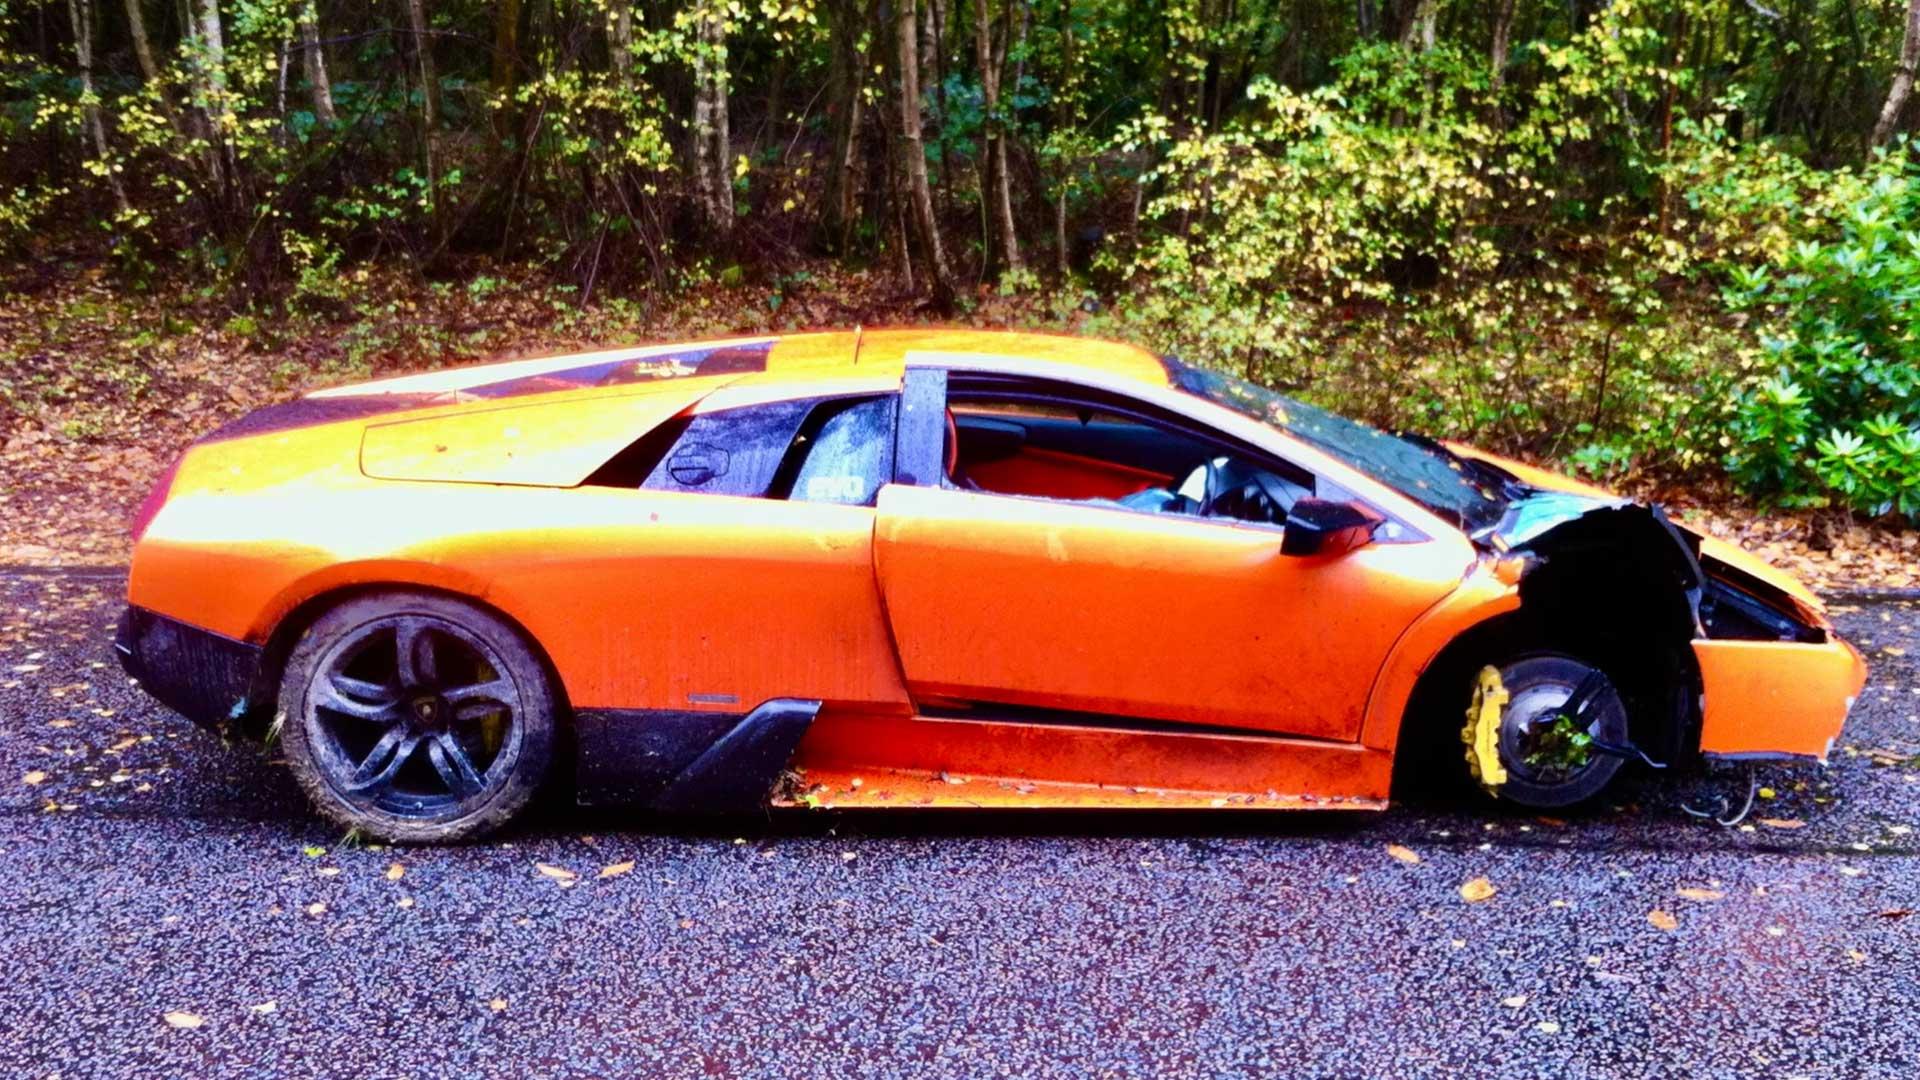 Lamborghini Murciélago 300.000 mijl bijna 500.000 kilometer zjkant na crash